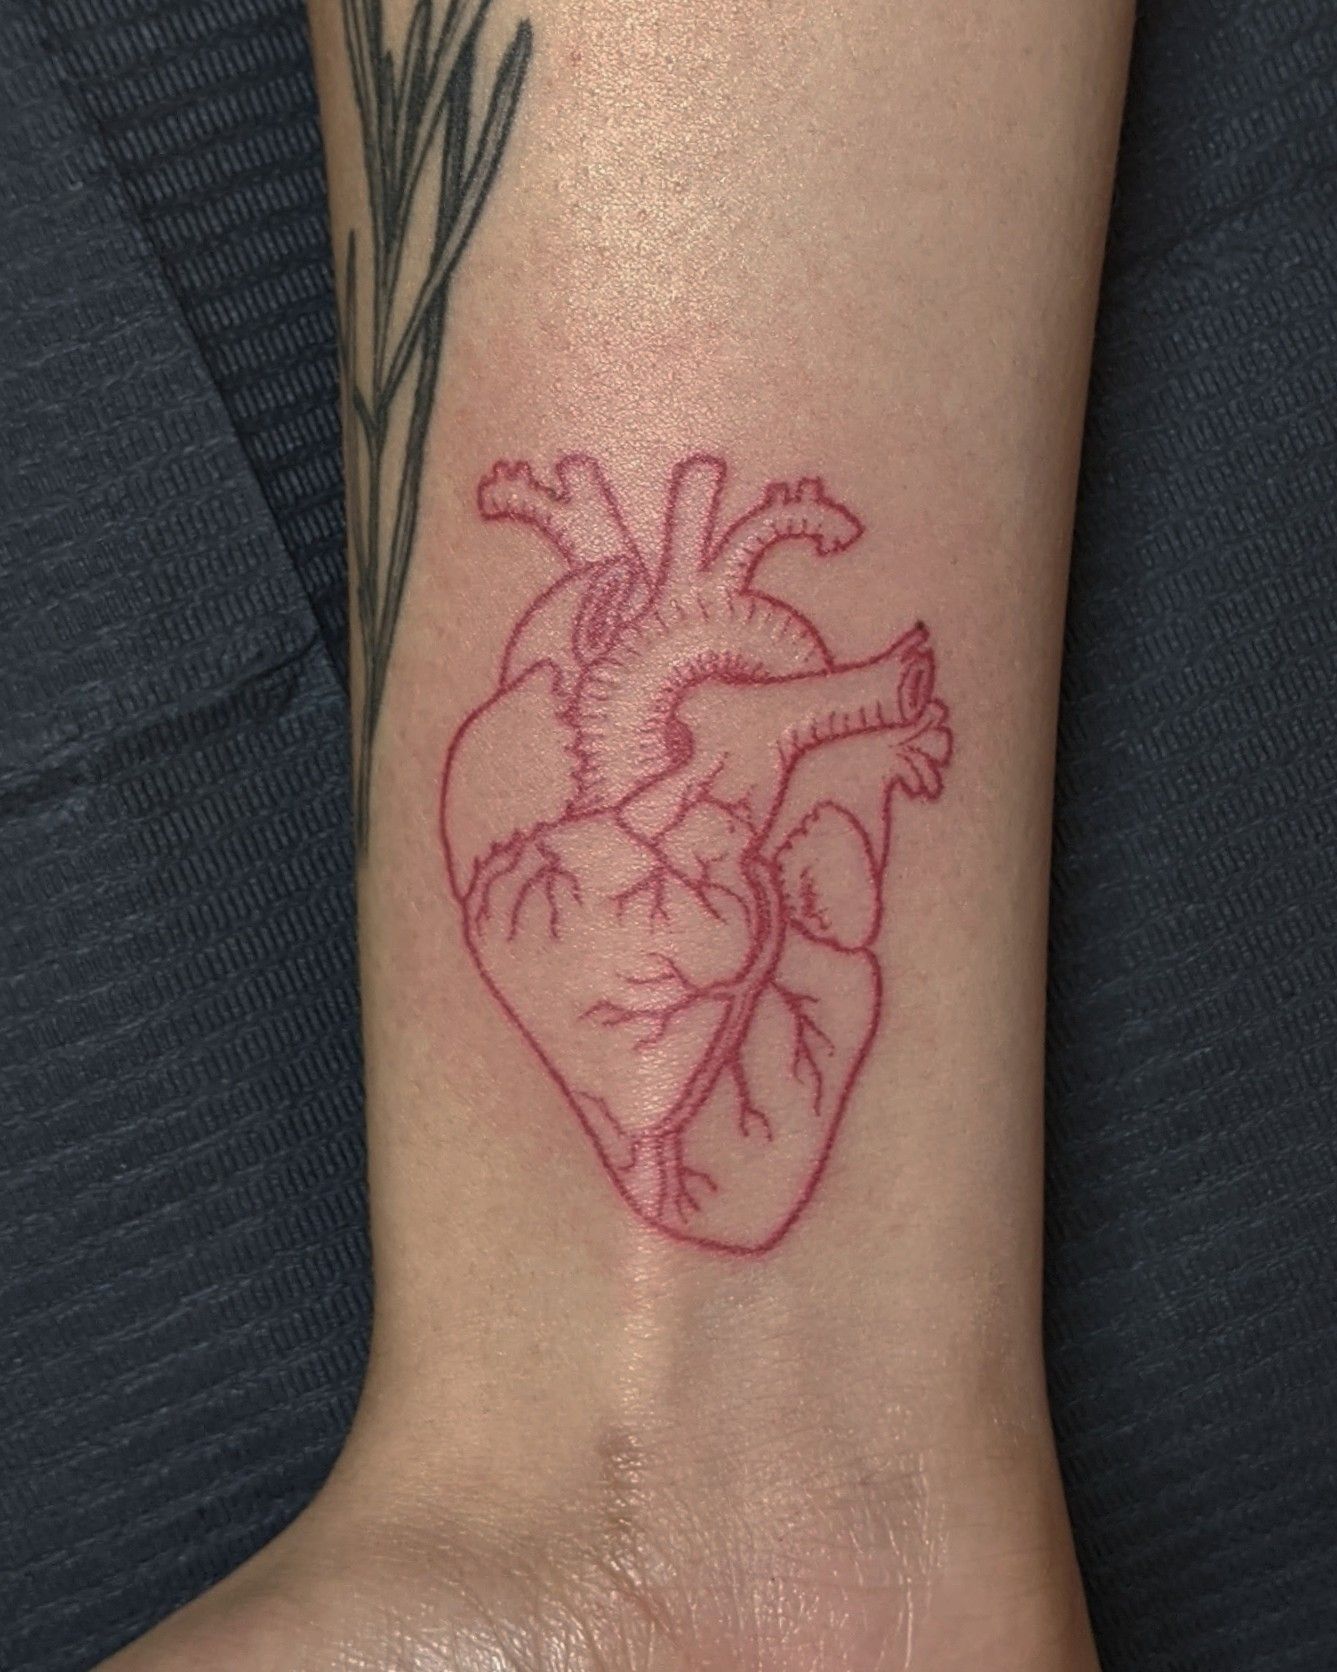 Broken heart tattoo by xoïl loïc lavenu - Tattoogrid.net